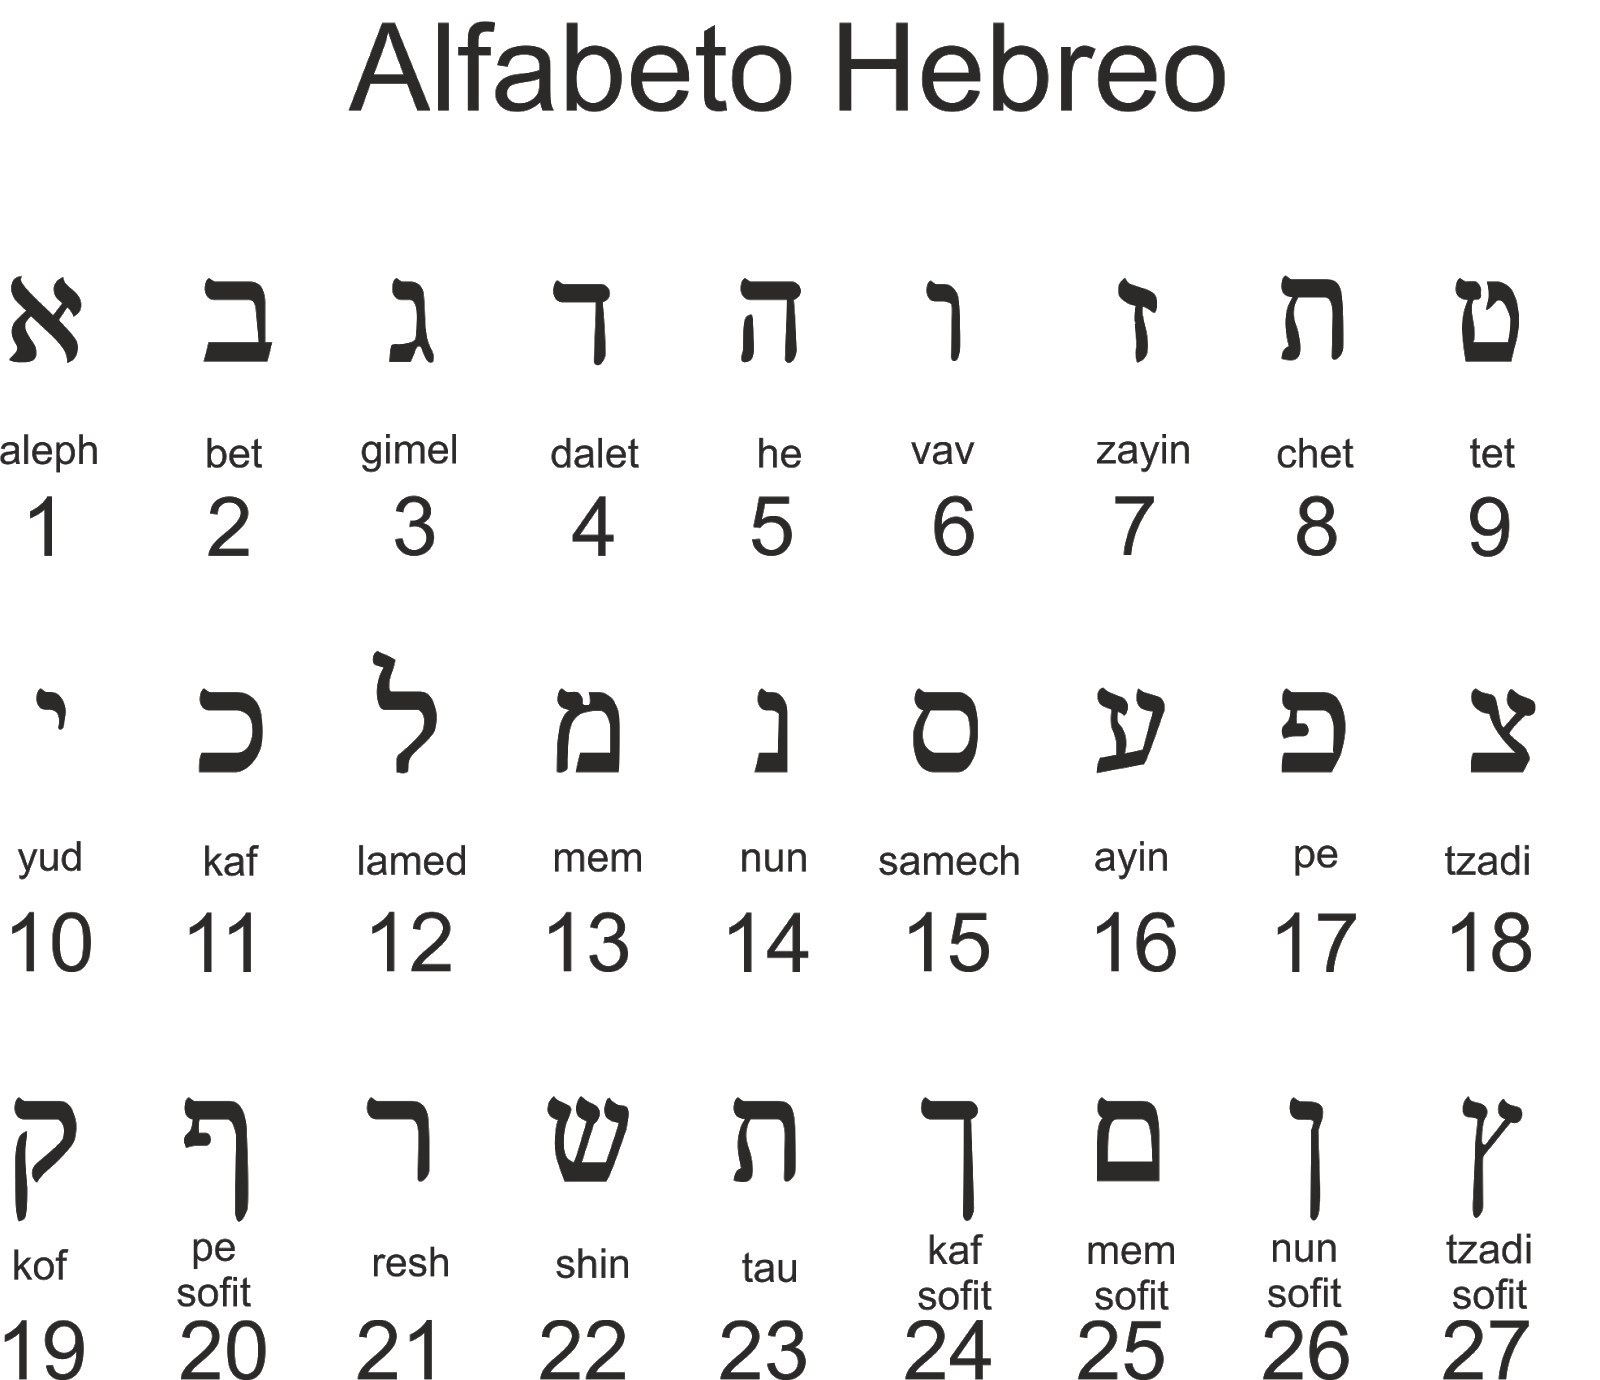 Alfabeto hebreo biblico